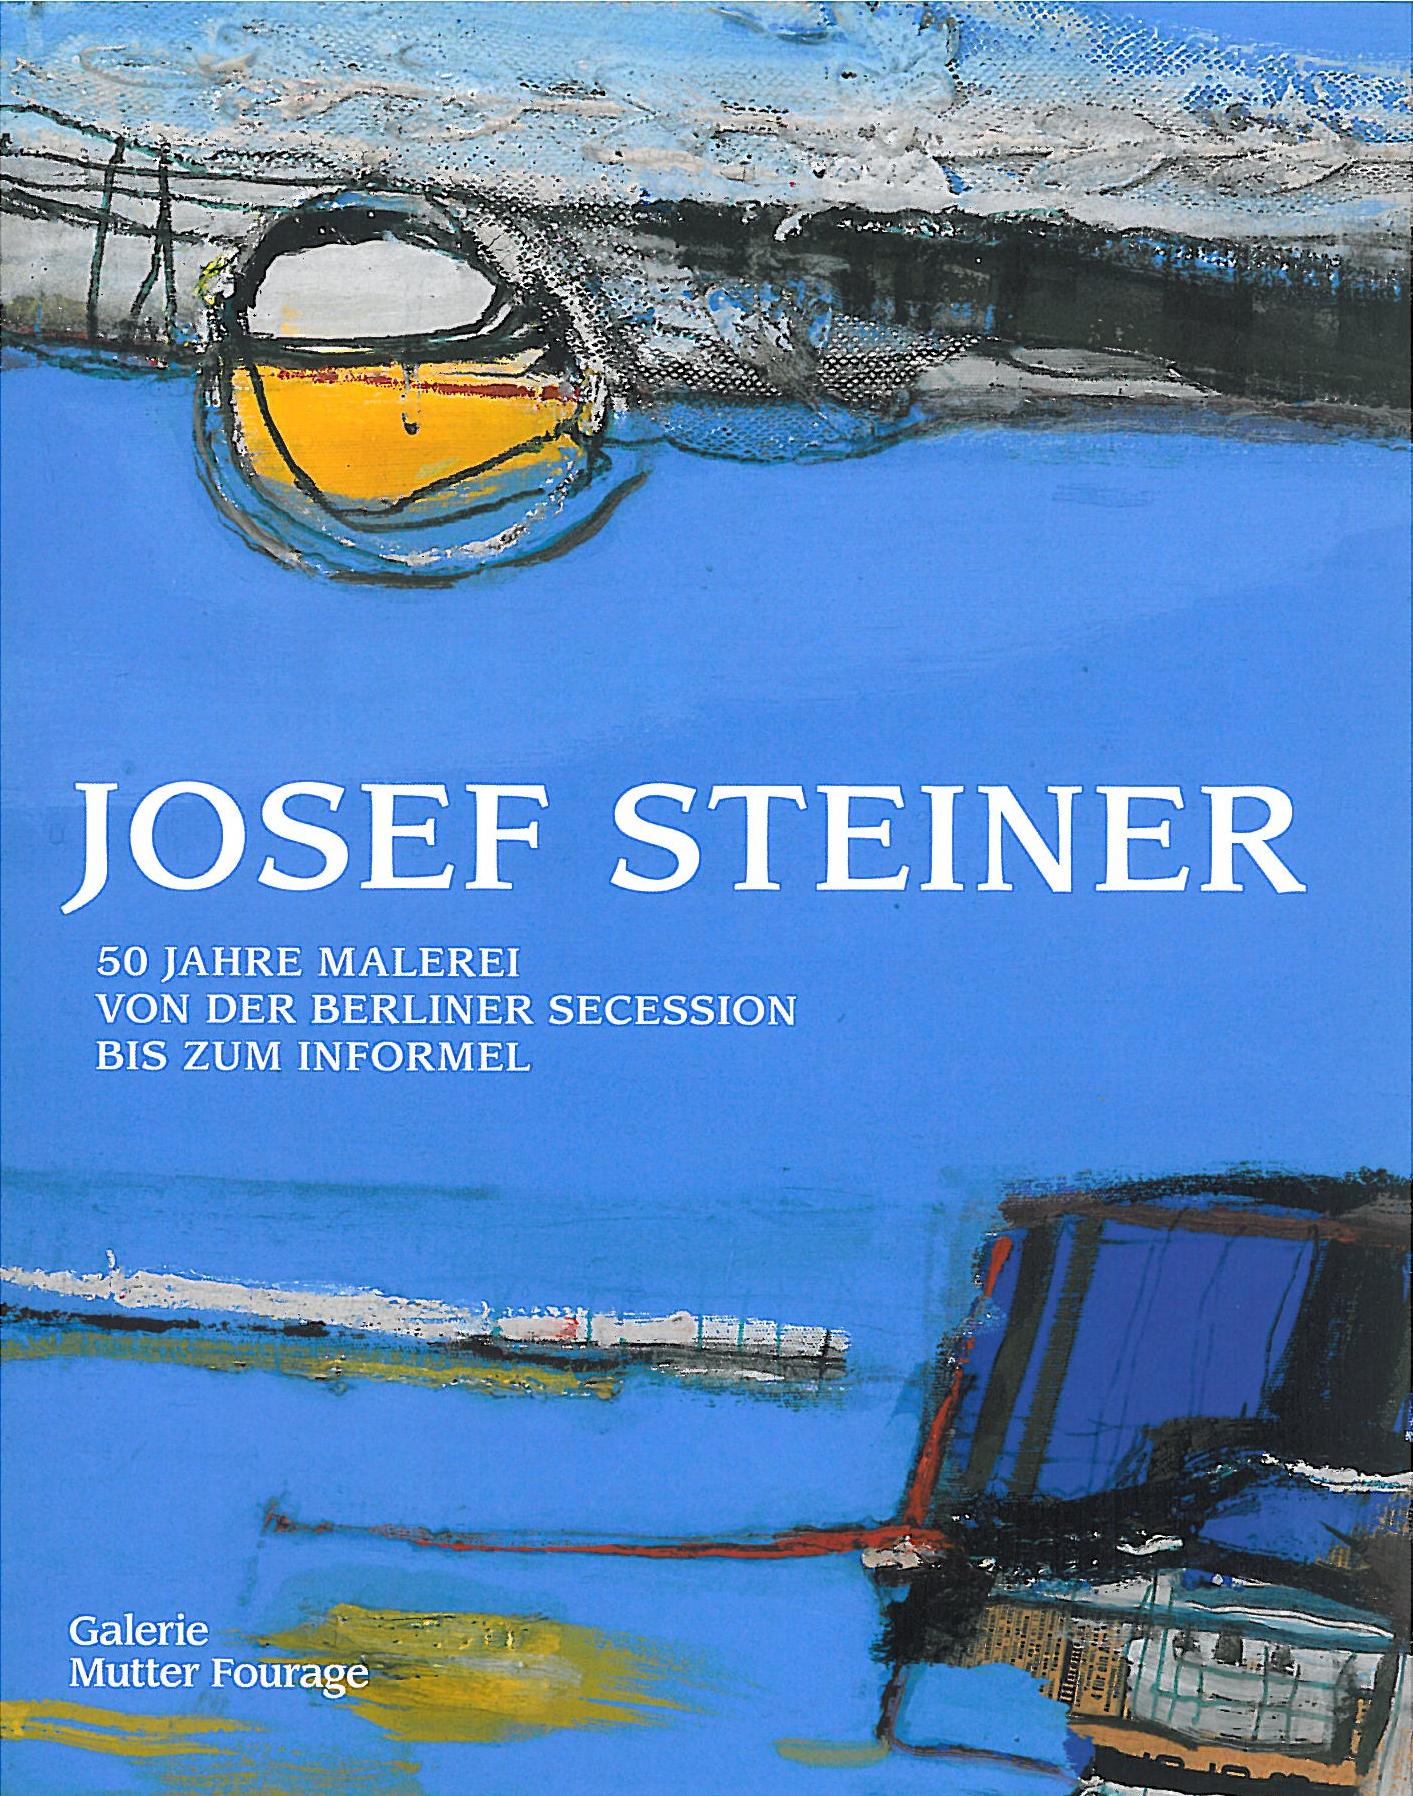 Josef Steiner, 50 Jahre Malerei